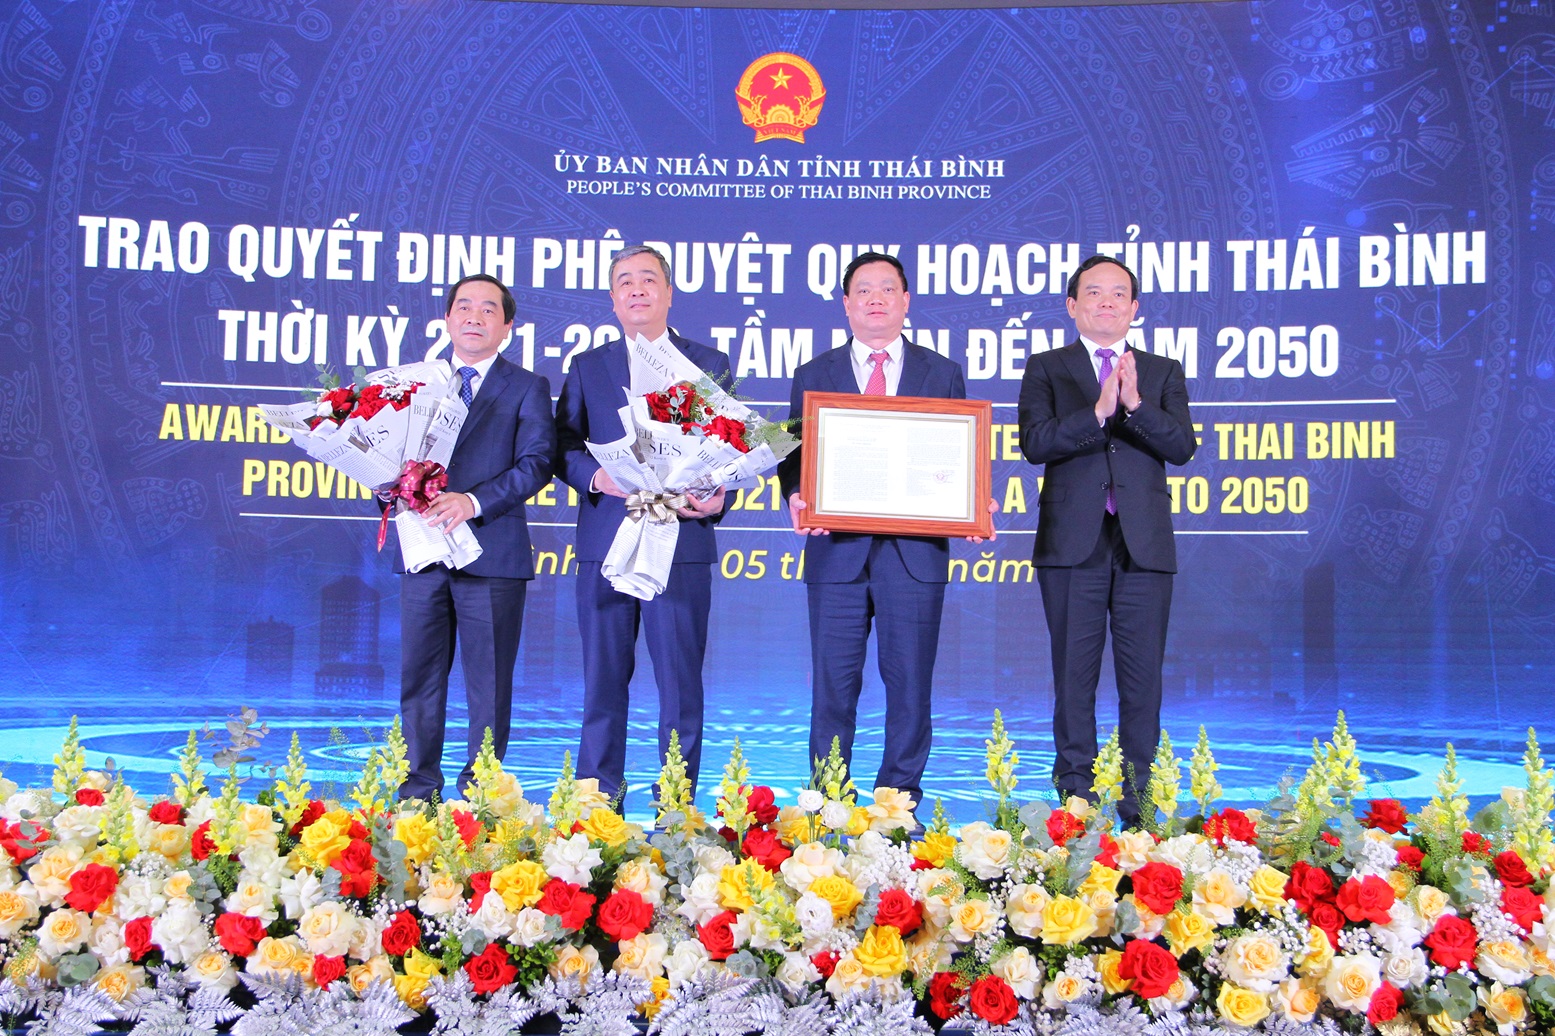 Phó Thủ tướng Trần Lưu Quang trao Quyết định 1735/QĐ-TTg ngày 29/12/2023 của Thủ tướng Chính phủ phê duyệt Quy hoạch tỉnh Thái Bình thời kỳ 2021 - 2030, tầm nhìn đến năm 2050 cho lãnh đạo tỉnh Thái Bình